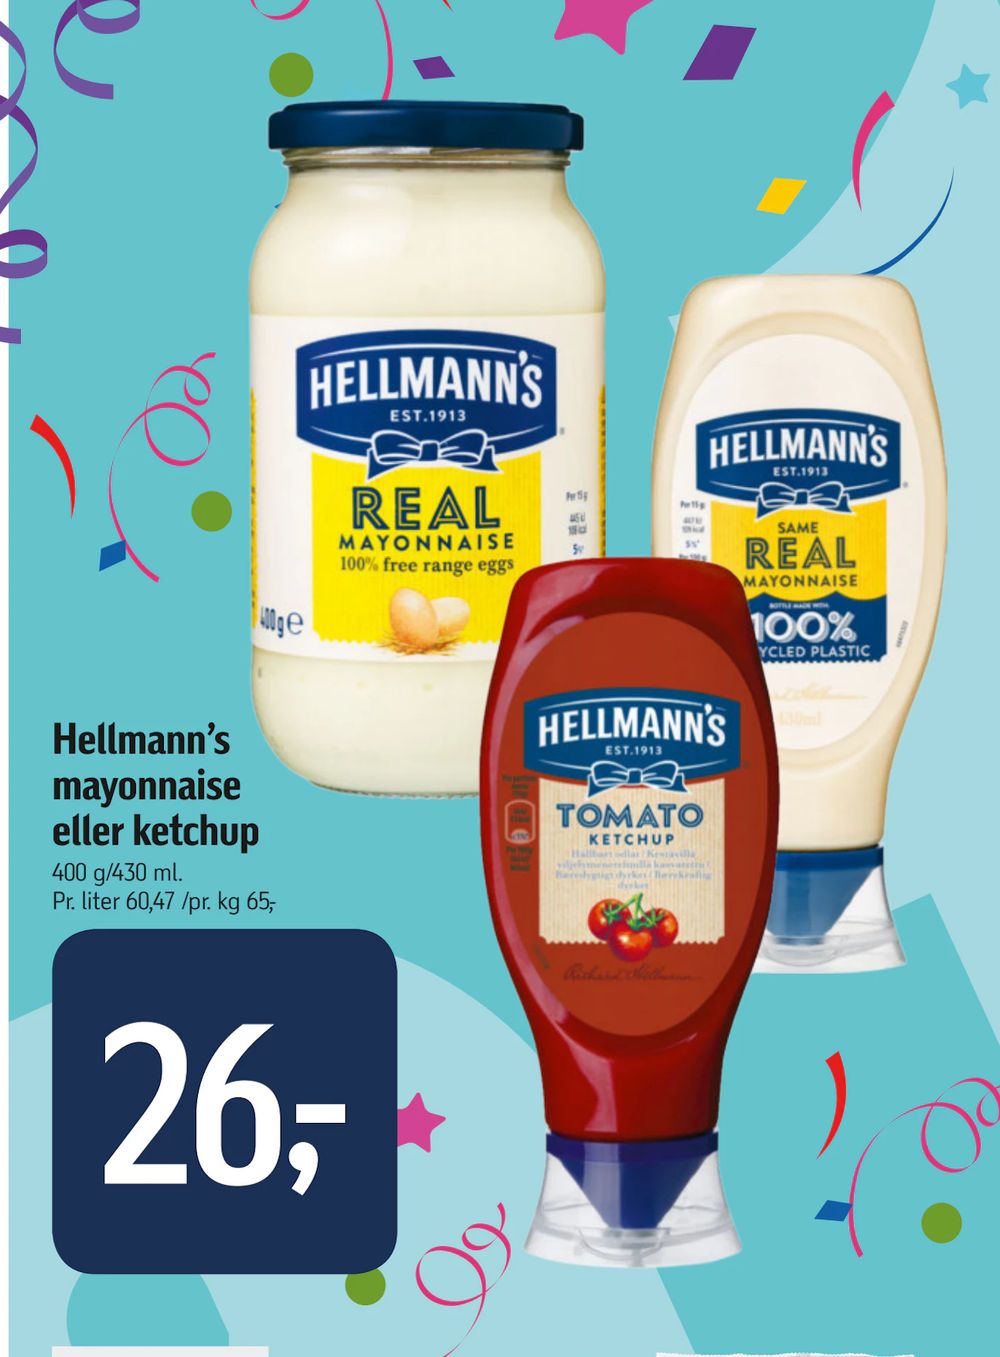 Tilbud på Hellmann’s mayonnaise eller ketchup fra føtex til 26 kr.